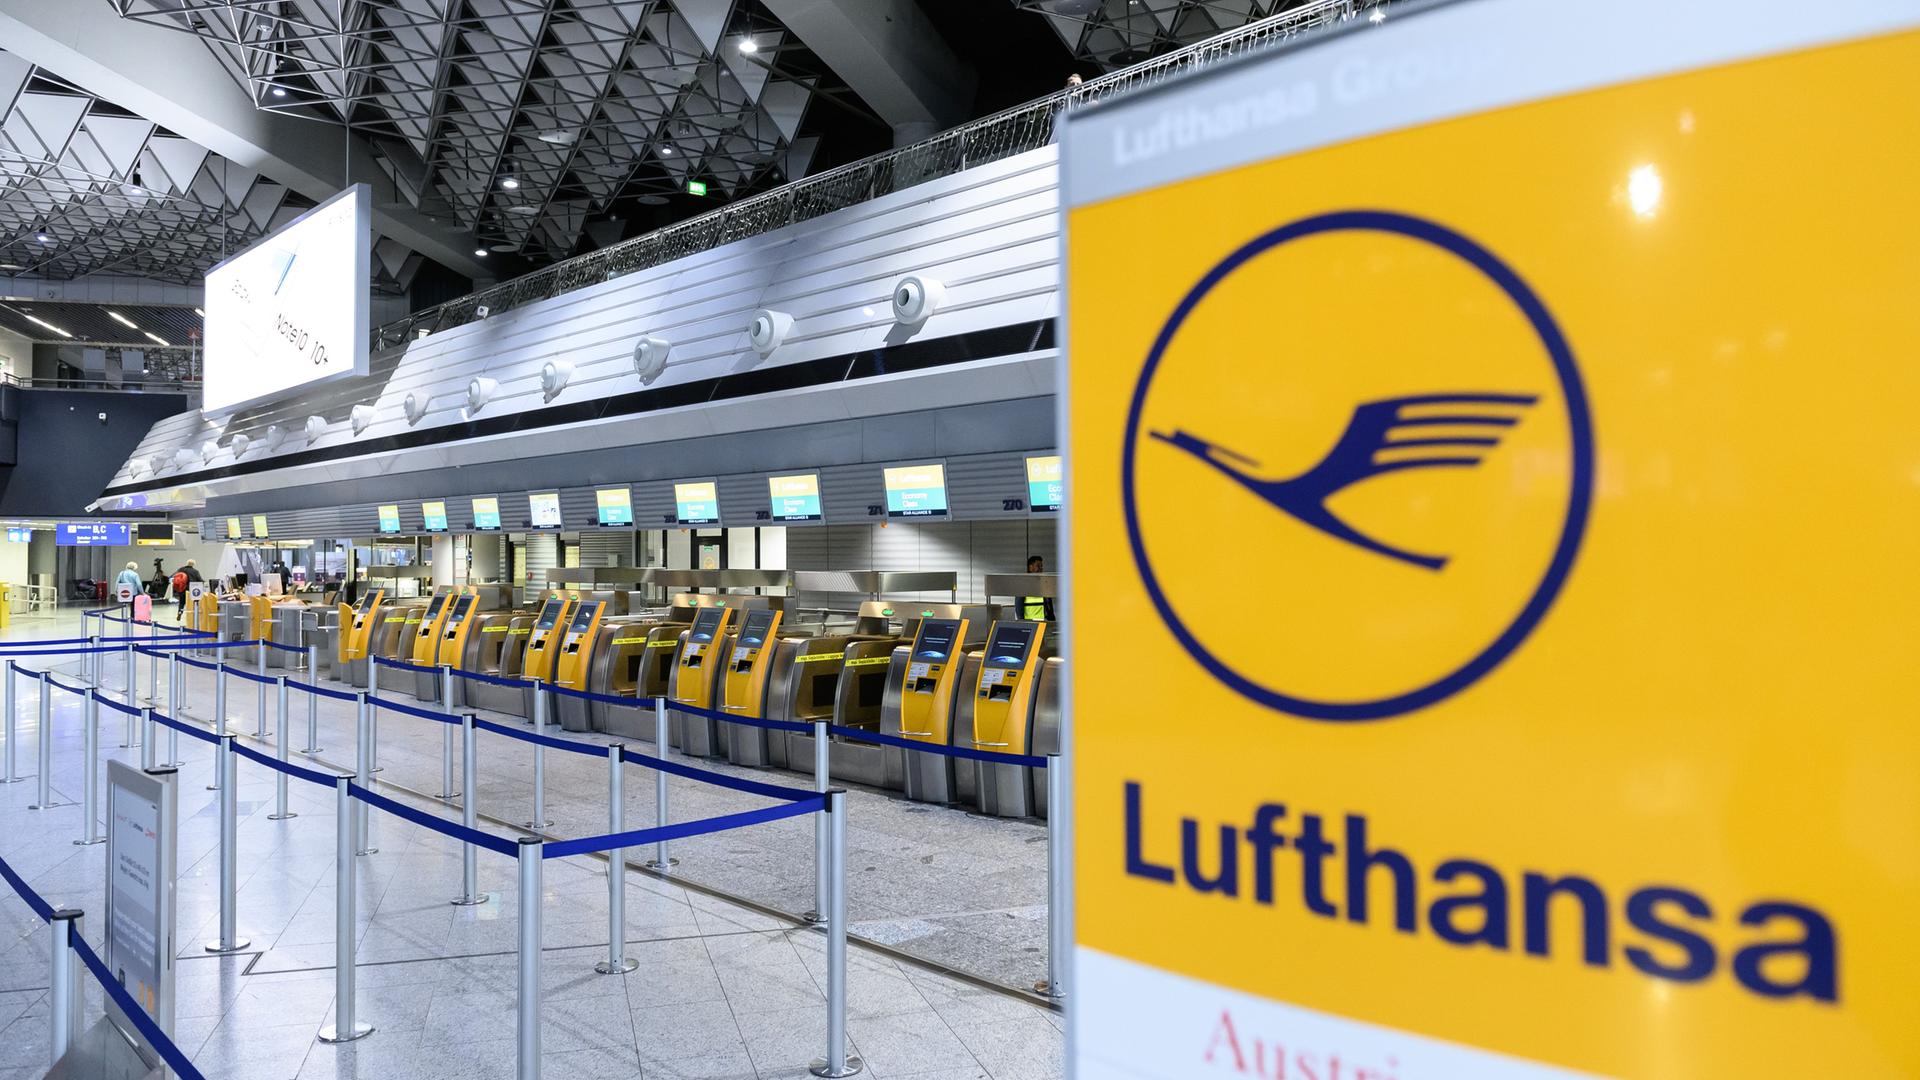 Leere Check-in Schalter der Fluggesellschaft Lufthansa im Terminal 1 des Flughafens Frankfurt am Main.